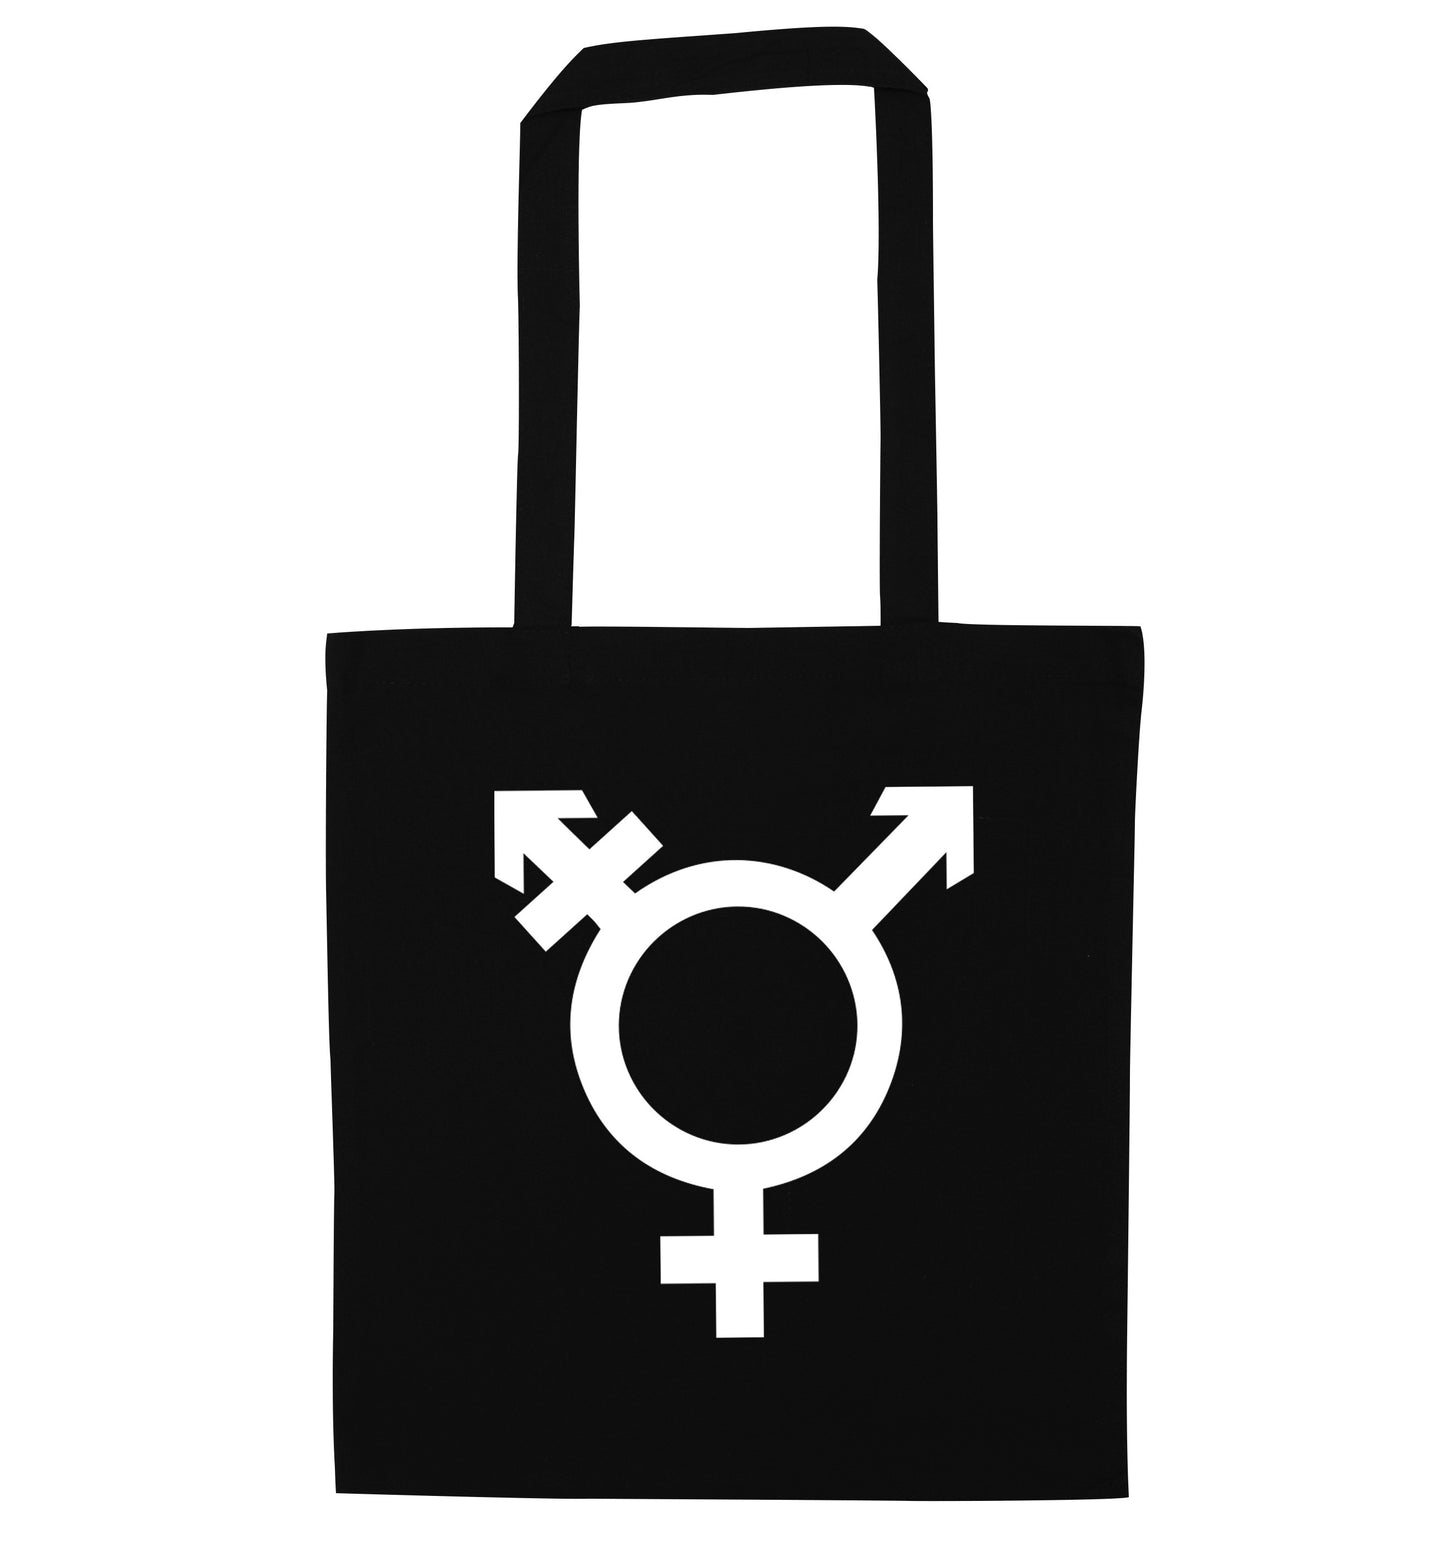 Gender neutral symbol large black tote bag